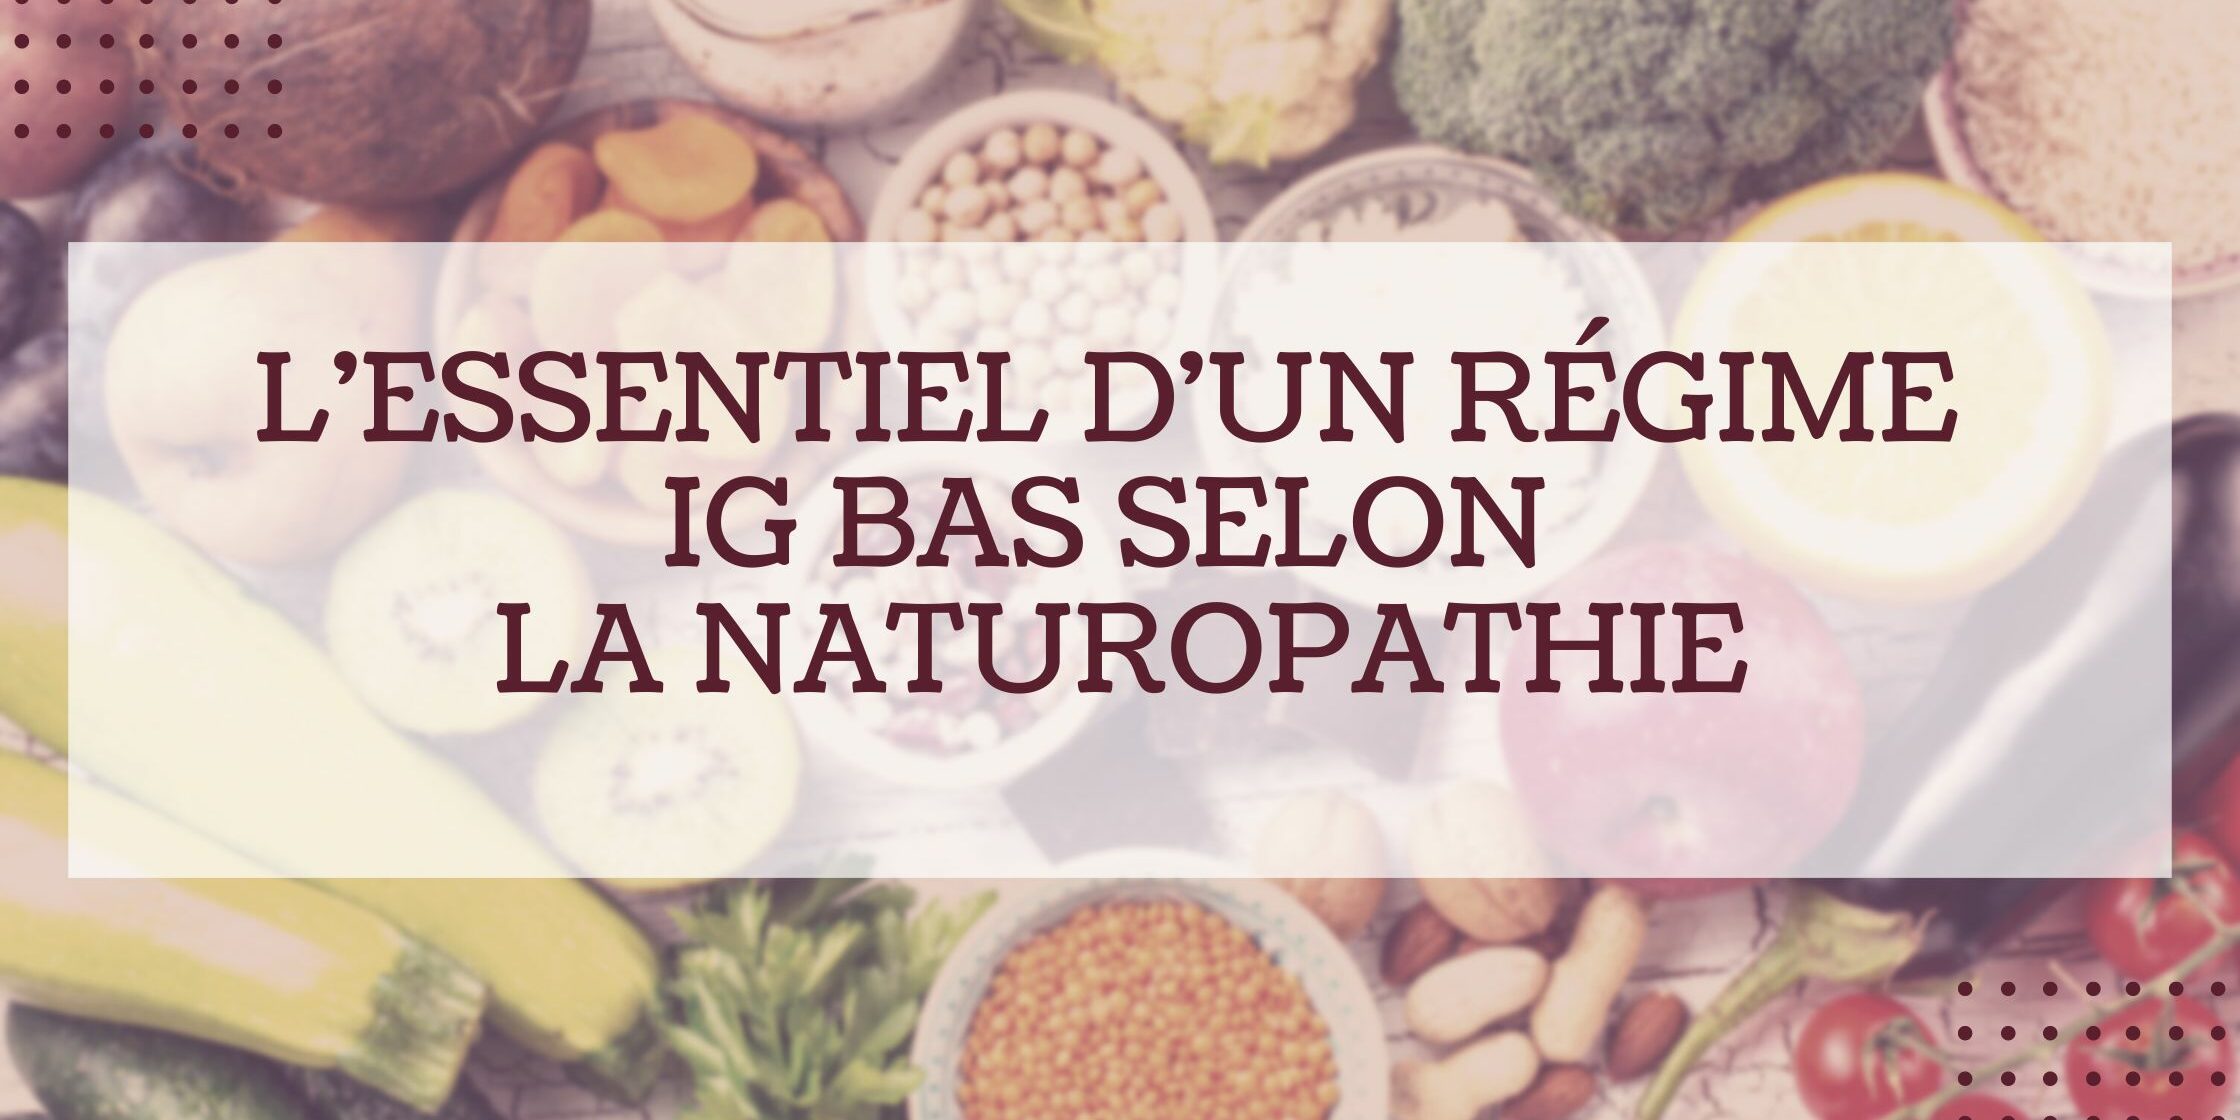 L'essentiel d'un régime IG bas selon la naturopathie - Julia Monnier  naturopathe